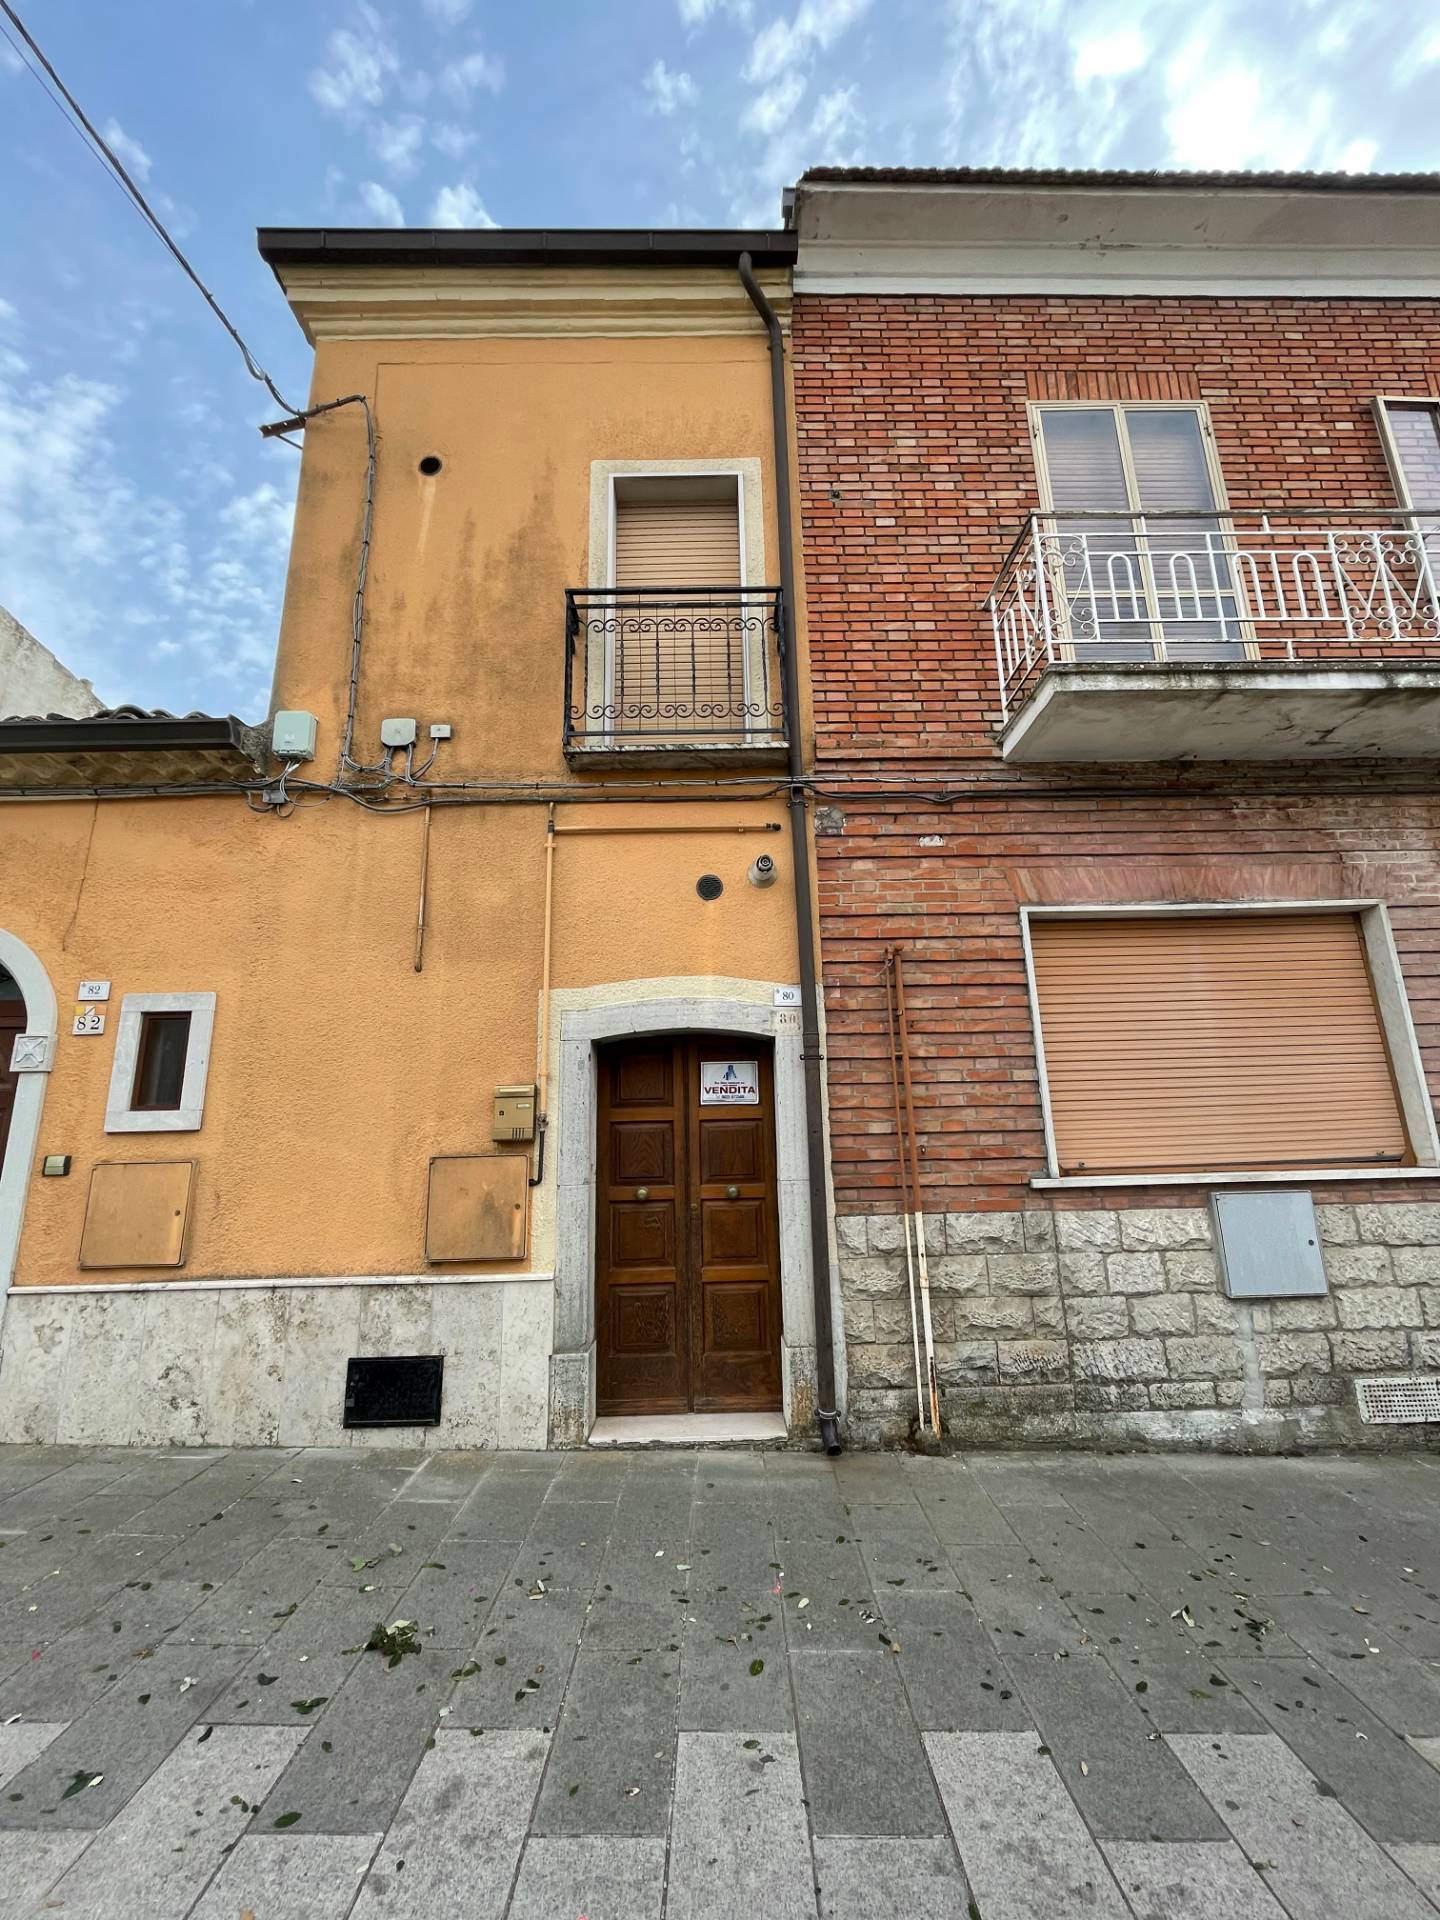 Soluzione Semindipendente in vendita a Savignano Irpino, 3 locali, zona Località: CorsoVittorioEmanuele, prezzo € 23.000 | CambioCasa.it